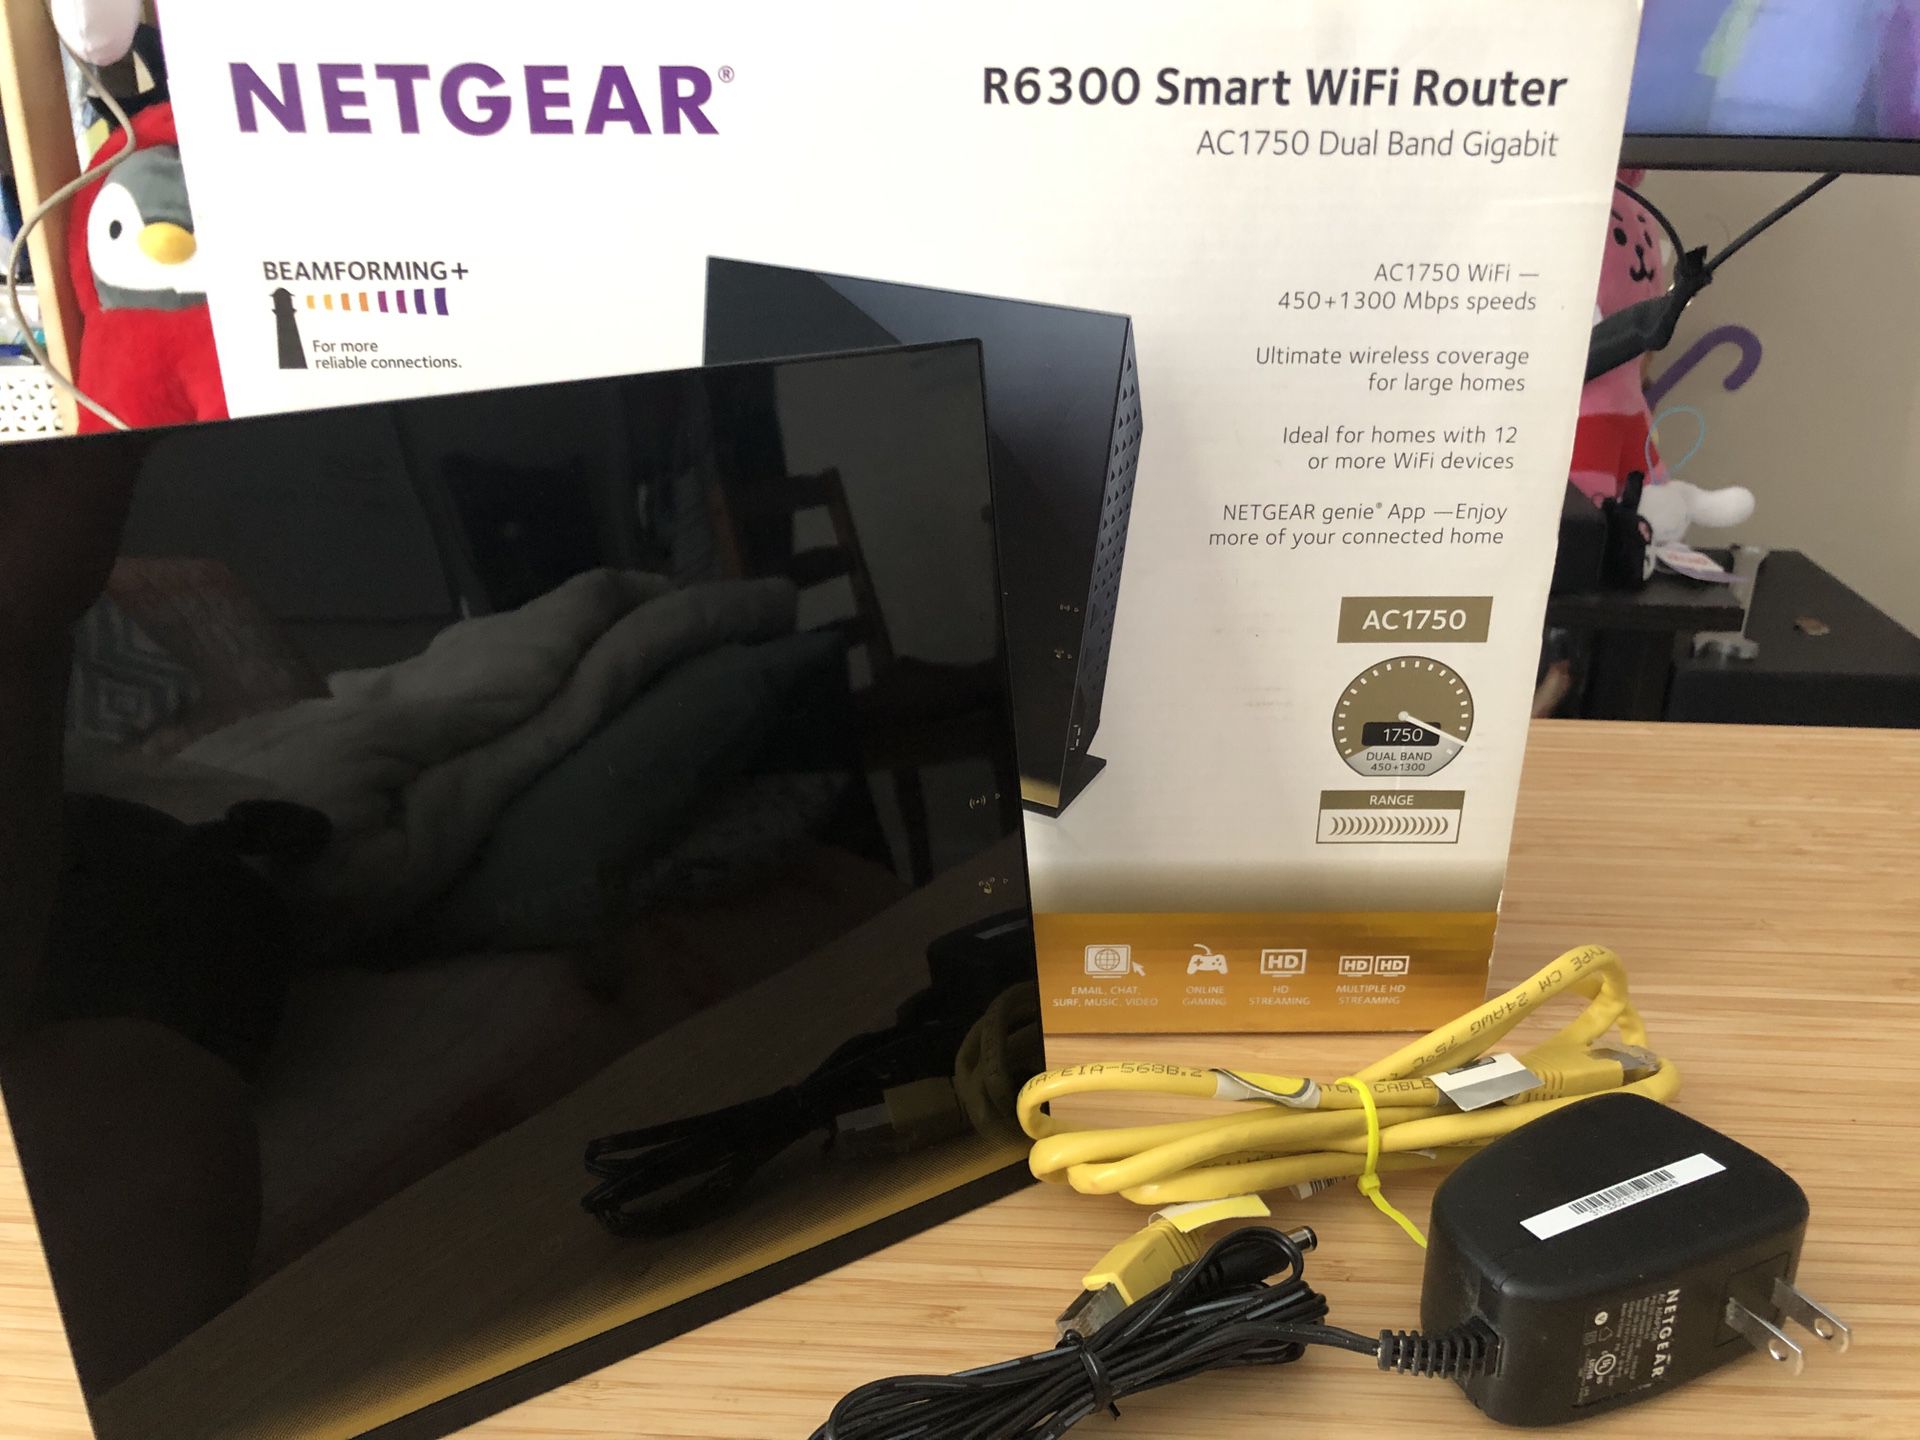 Netgear R6300 Smart WiFi Router